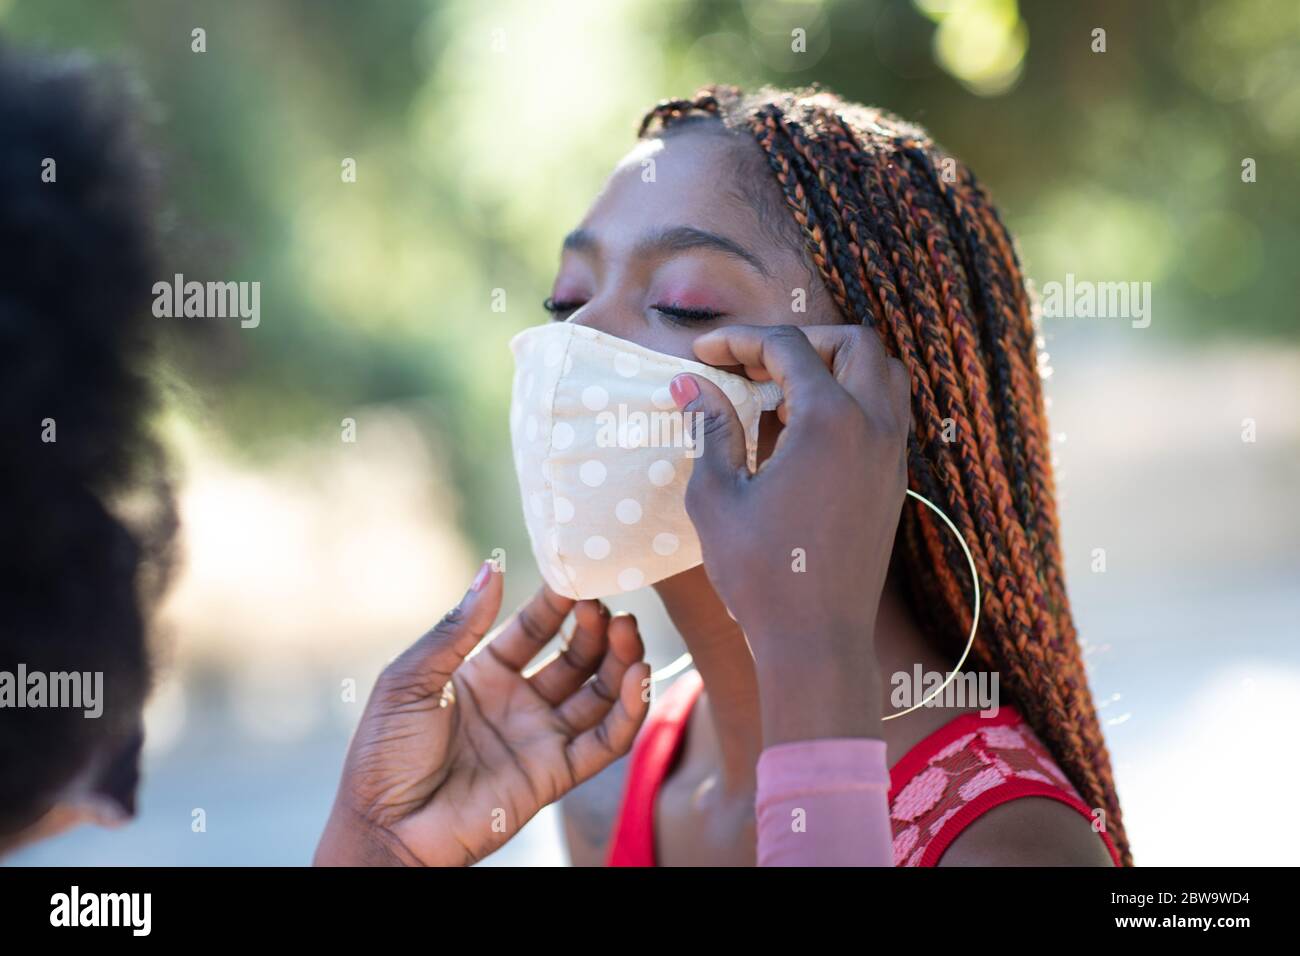 Belle fille afro-américaine aide son ami à mettre un masque facial sur. Le revêtement de visage est important pour protéger contre les virus, y compris COVID-19 Banque D'Images